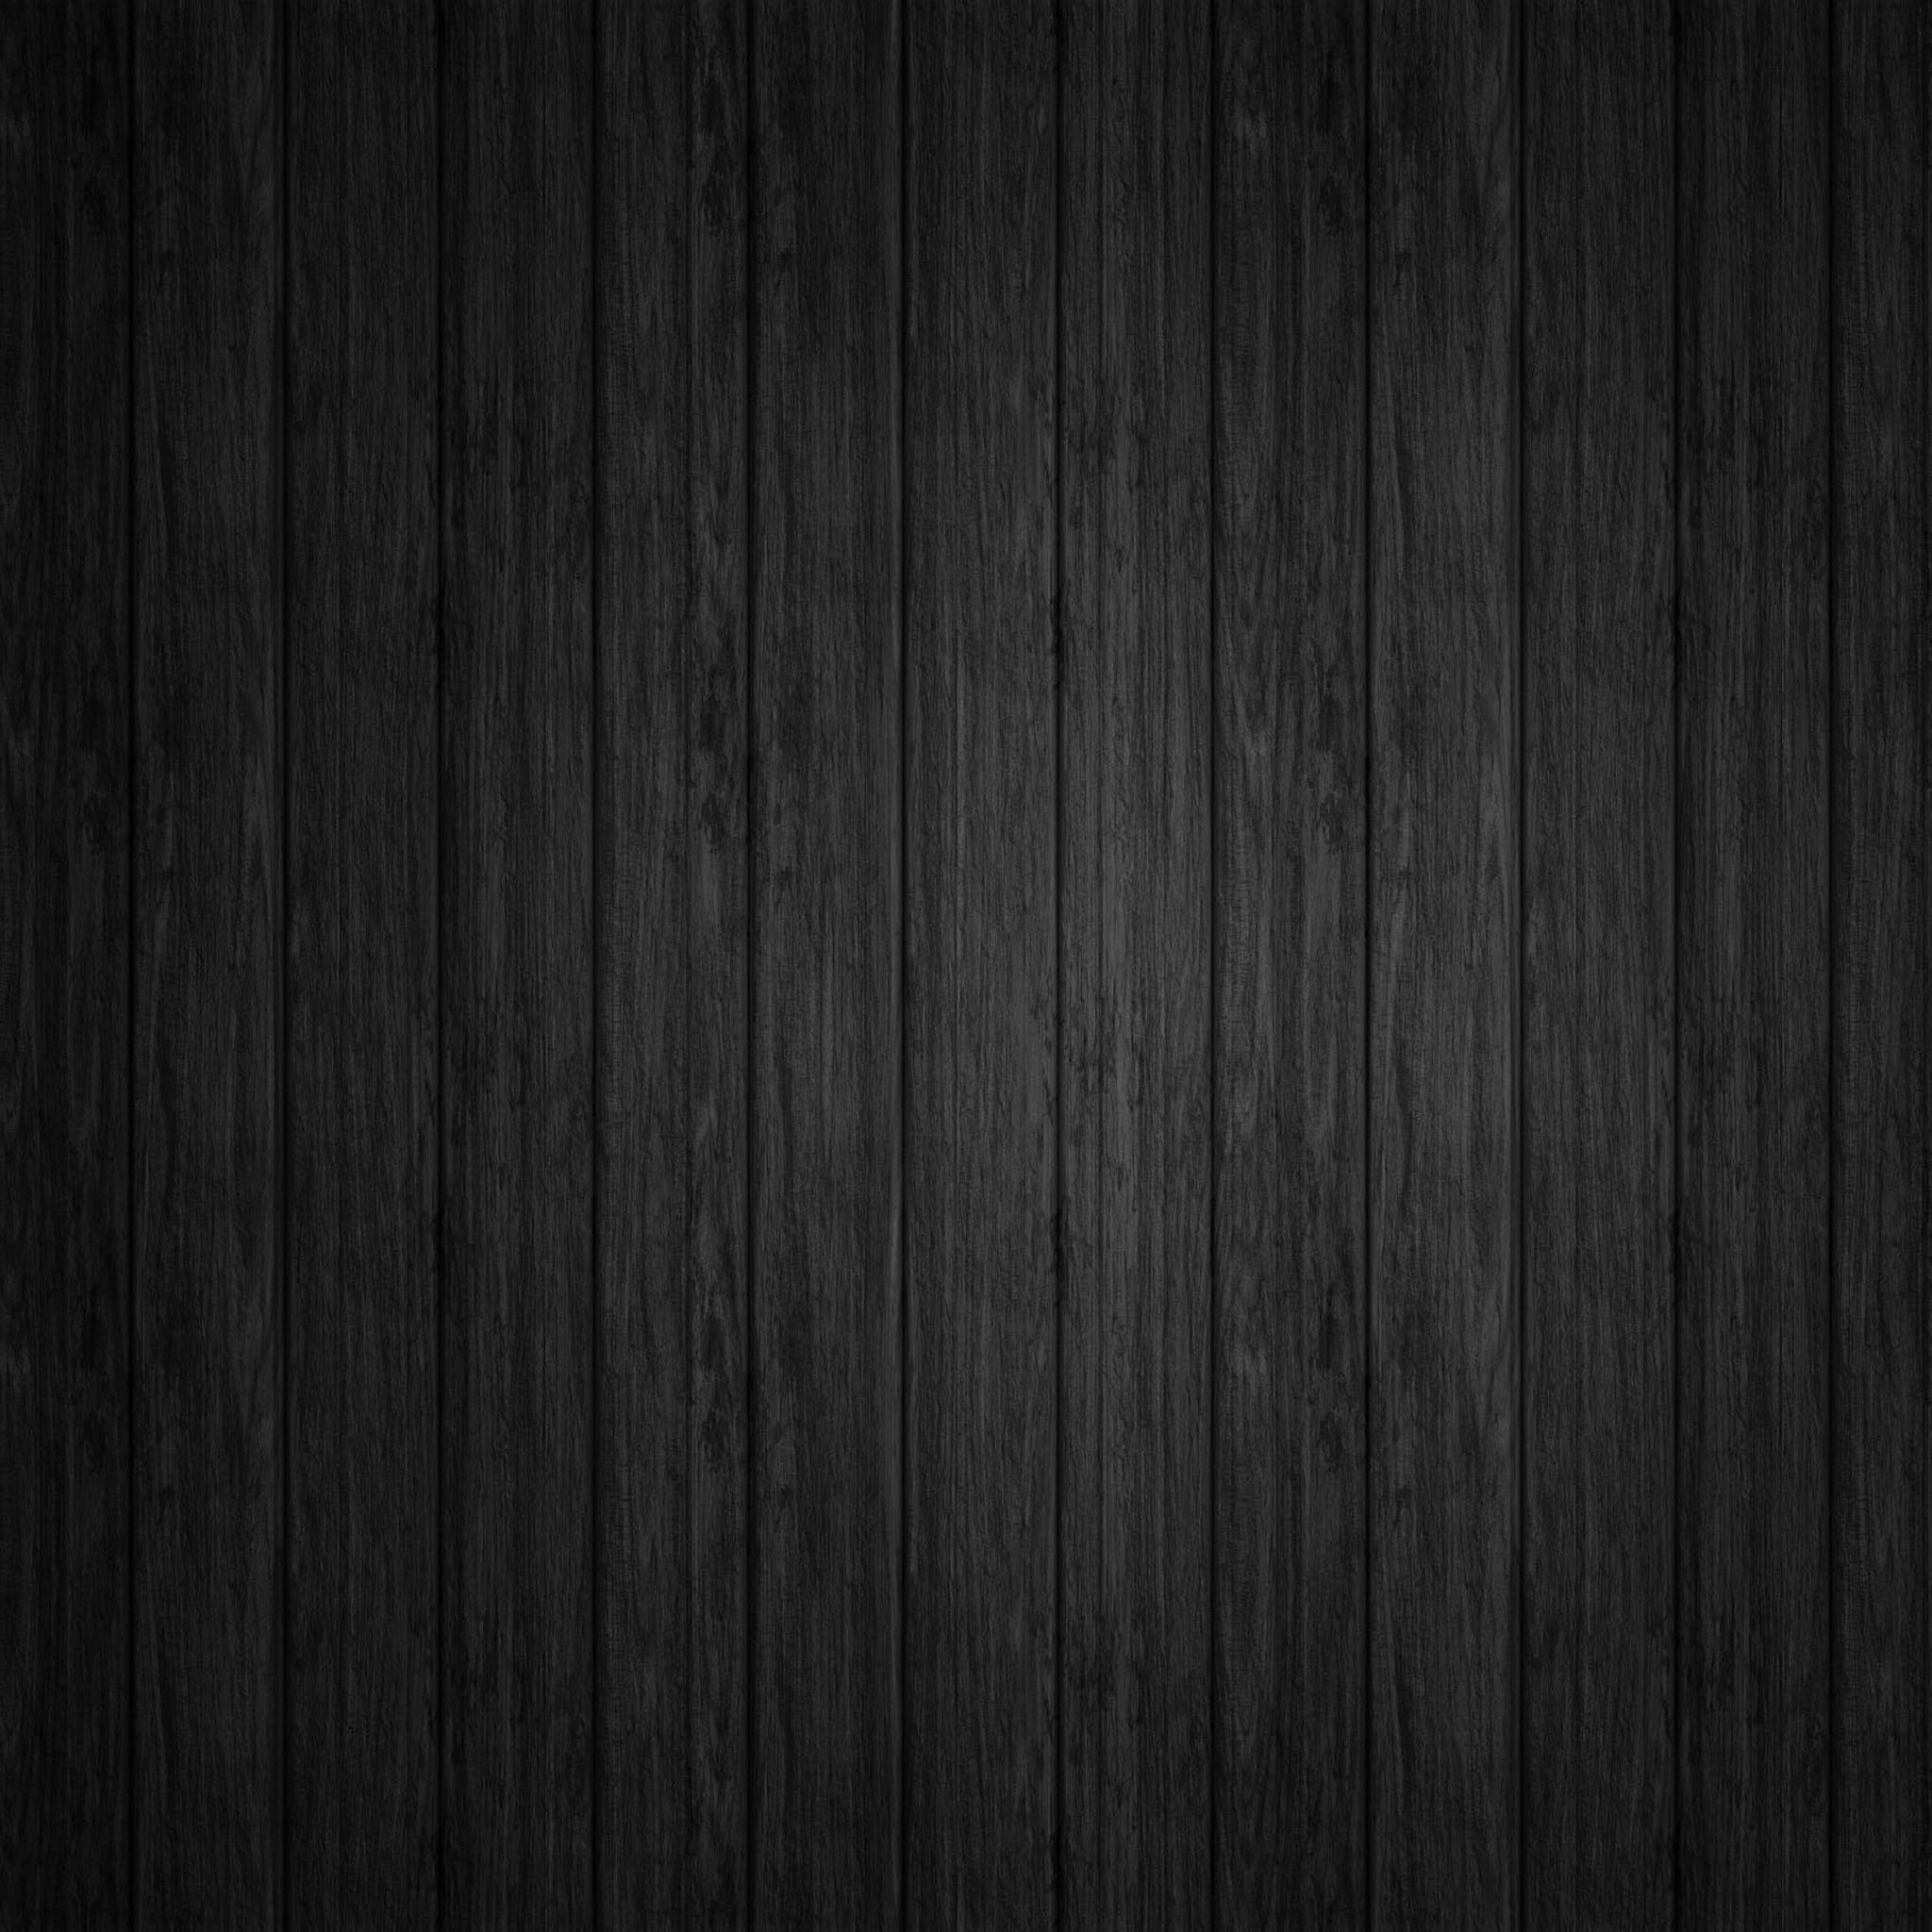 Black Wood Wallpaper Ipad 1 Hd Wallpaper Ipad タブレット壁紙ギャラリー